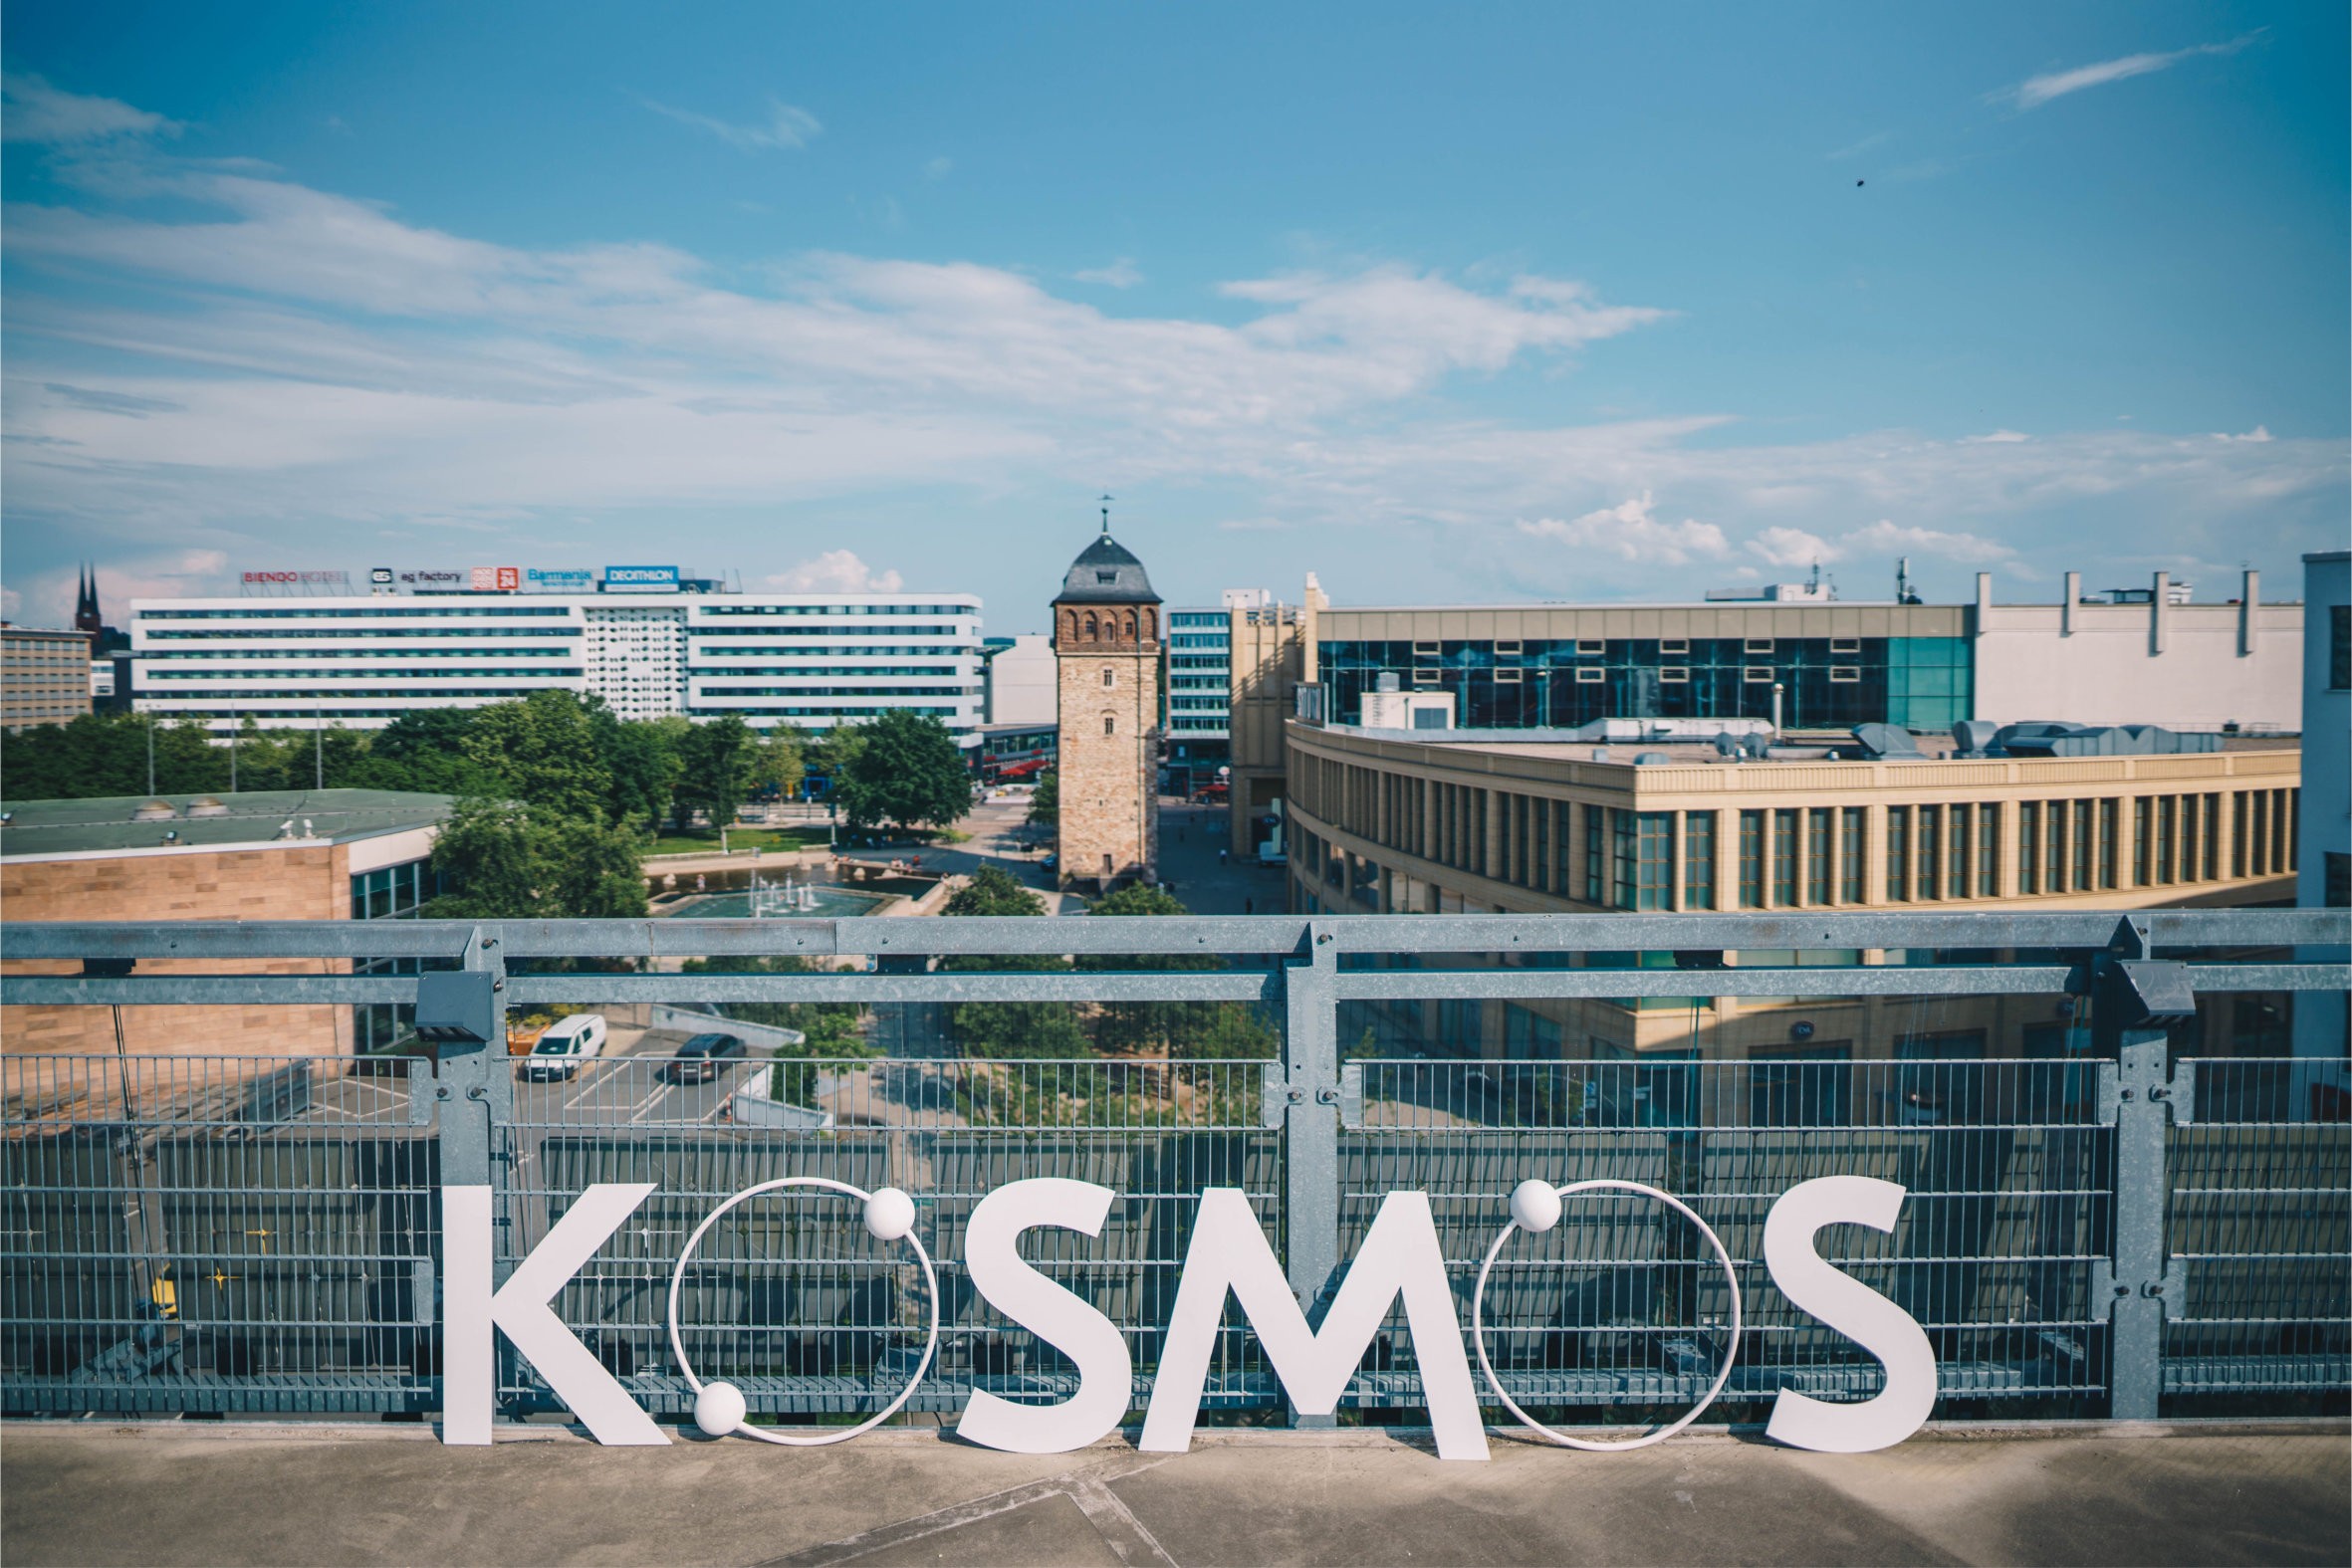 Kosmos Chemnitz – Infos Jetzt Online!